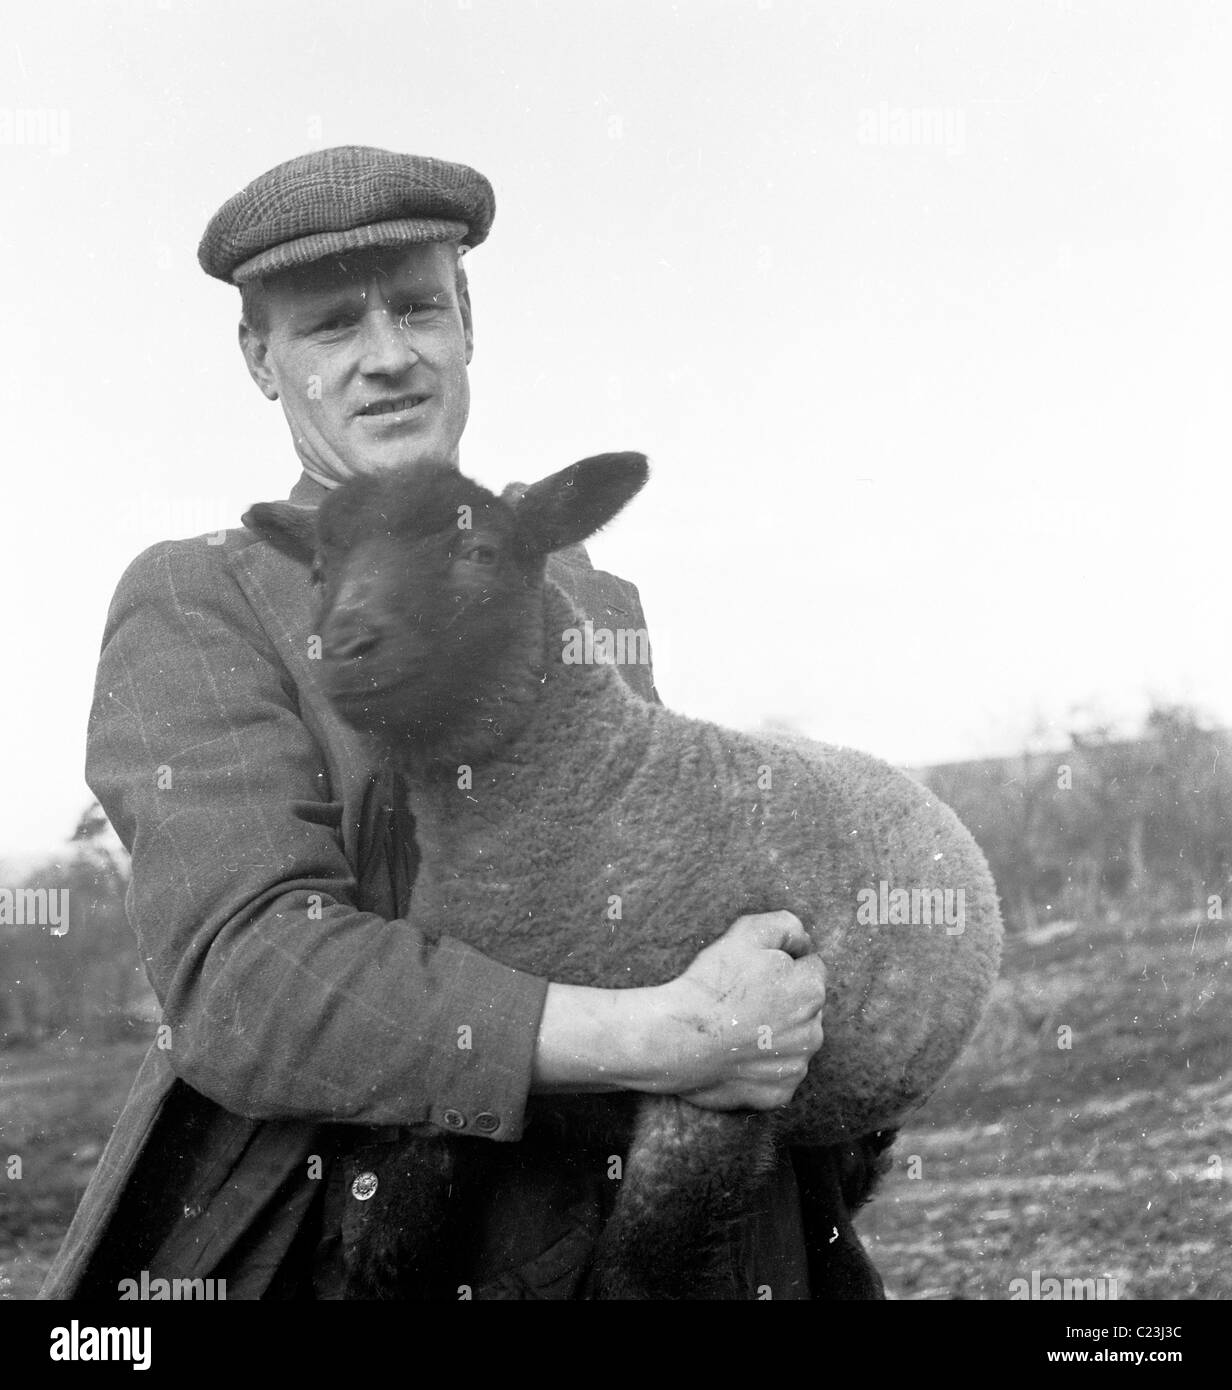 Années 1950, l'Angleterre. Un agriculteur détient un mouton noir dans ses bras dans ce tableau historique par J Allan l'argent comptant. Banque D'Images